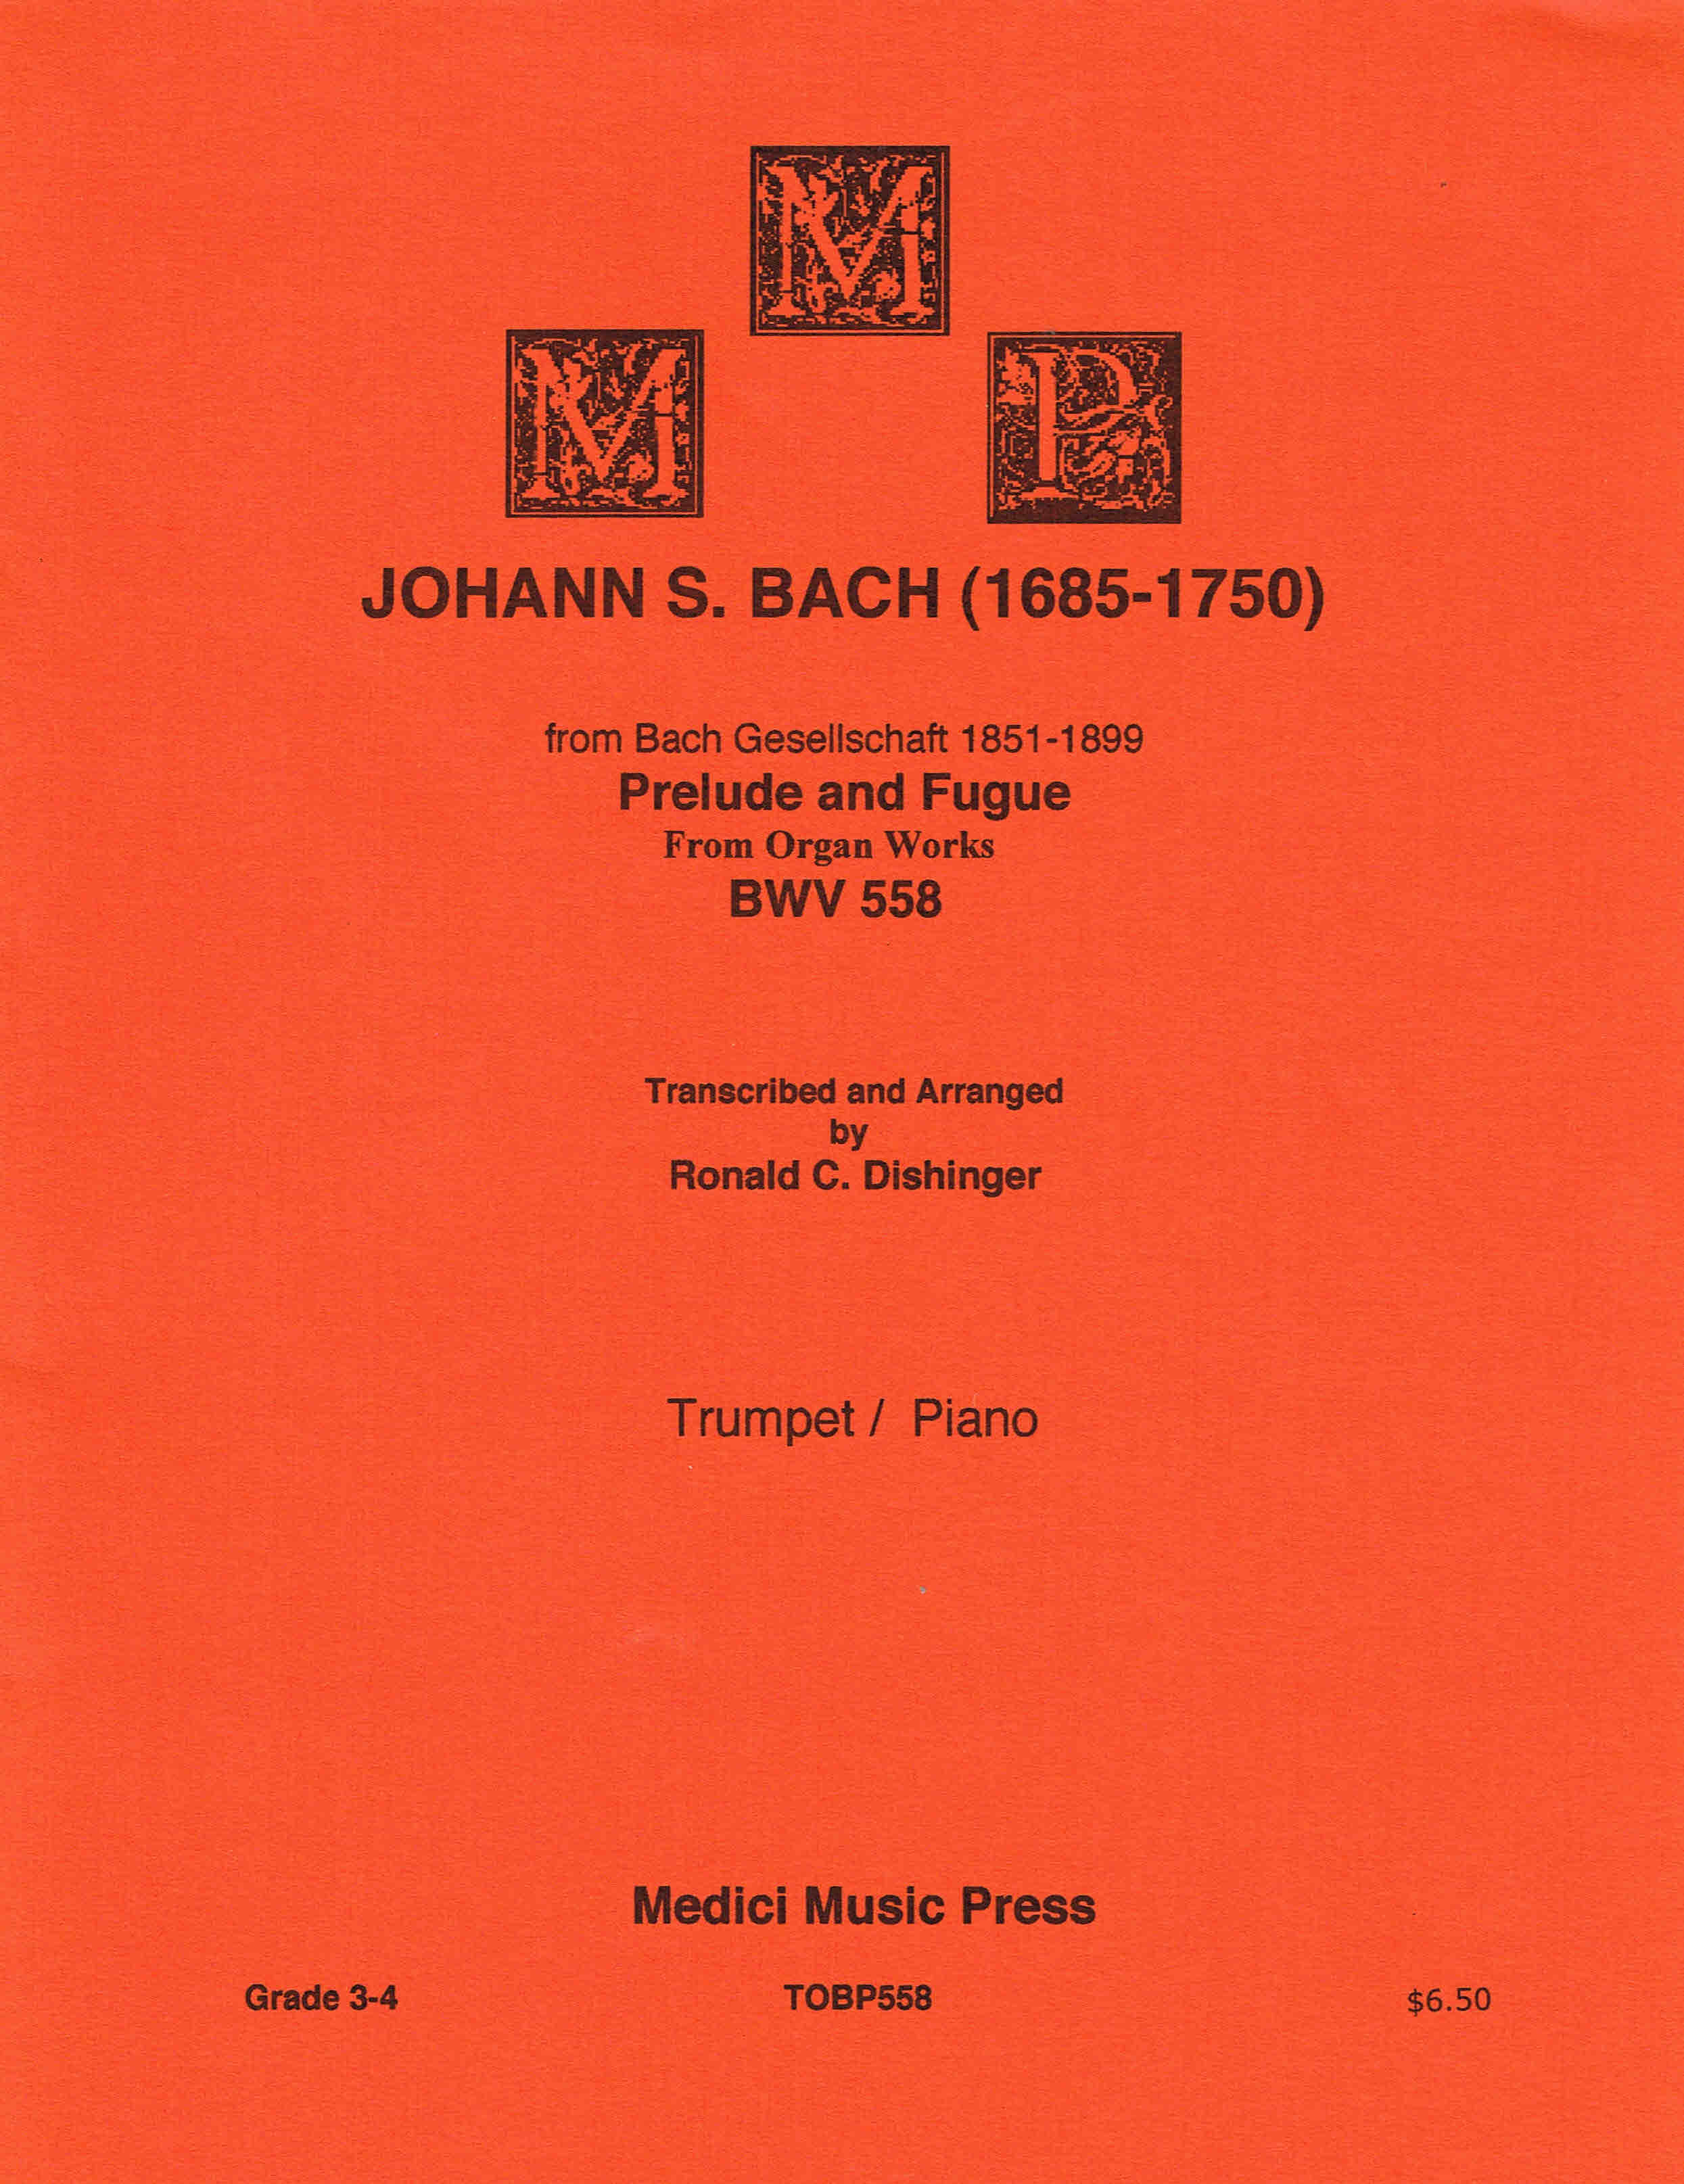 Johann S. Bach - Preludio y fuga de obras de órgano BWV 558 para trompeta/piano... - Imagen 1 de 1